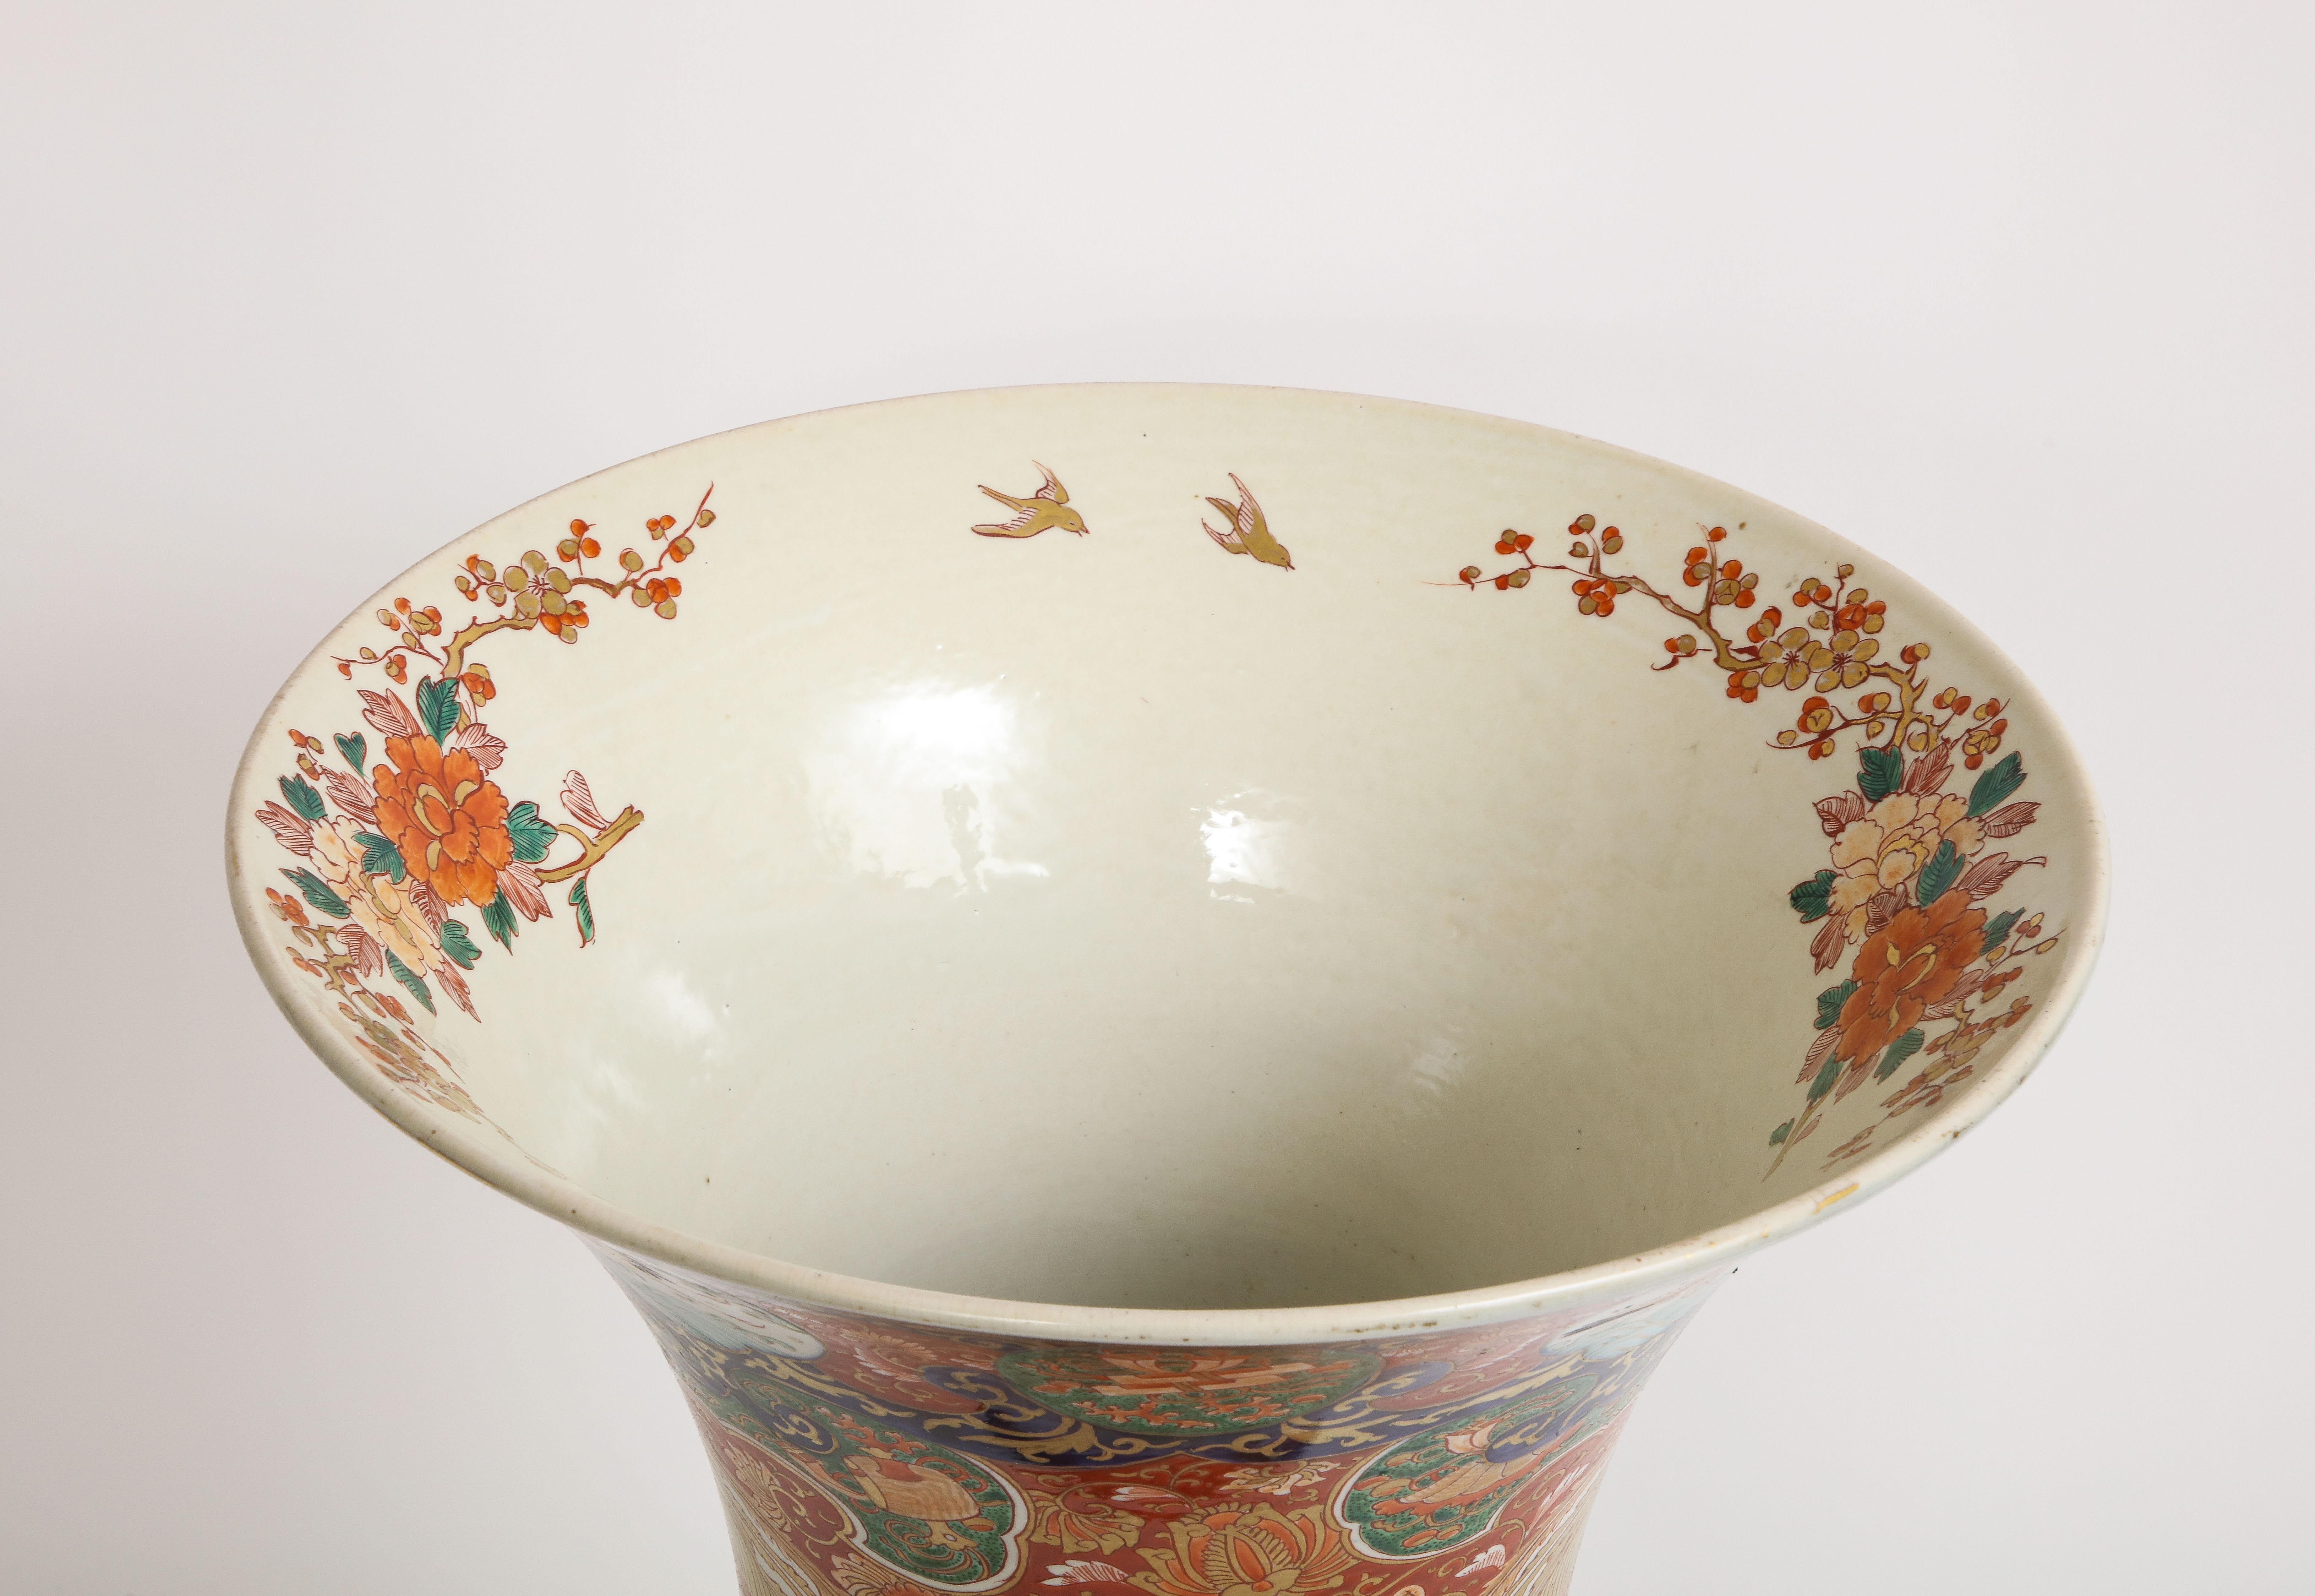  Palace Size Meiji Period Japanese Kutani Porcelain Vase, 1880 For Sale 2